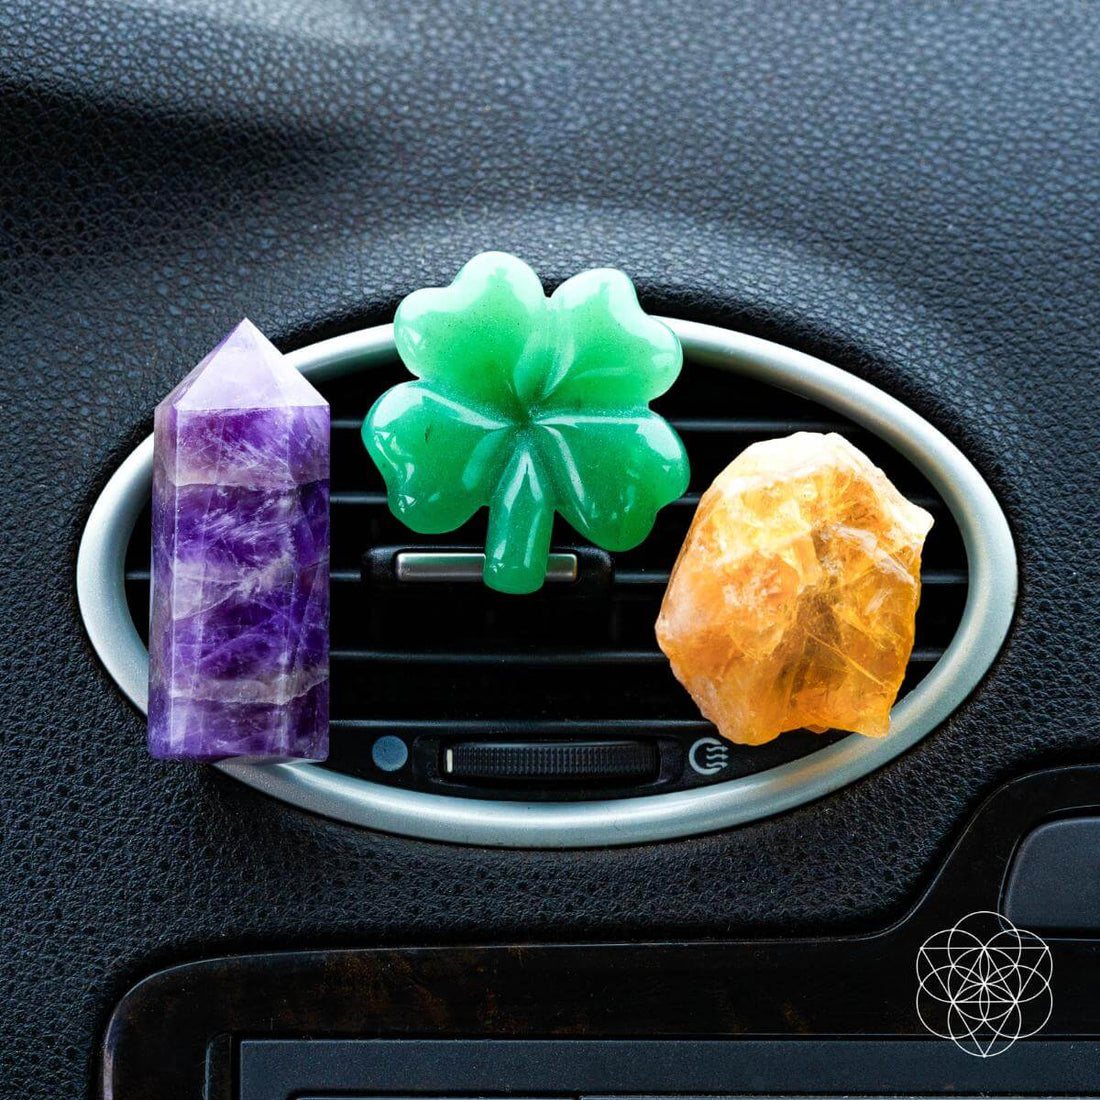 Guardiões da estrada - Kit de cristal de carro da sorte